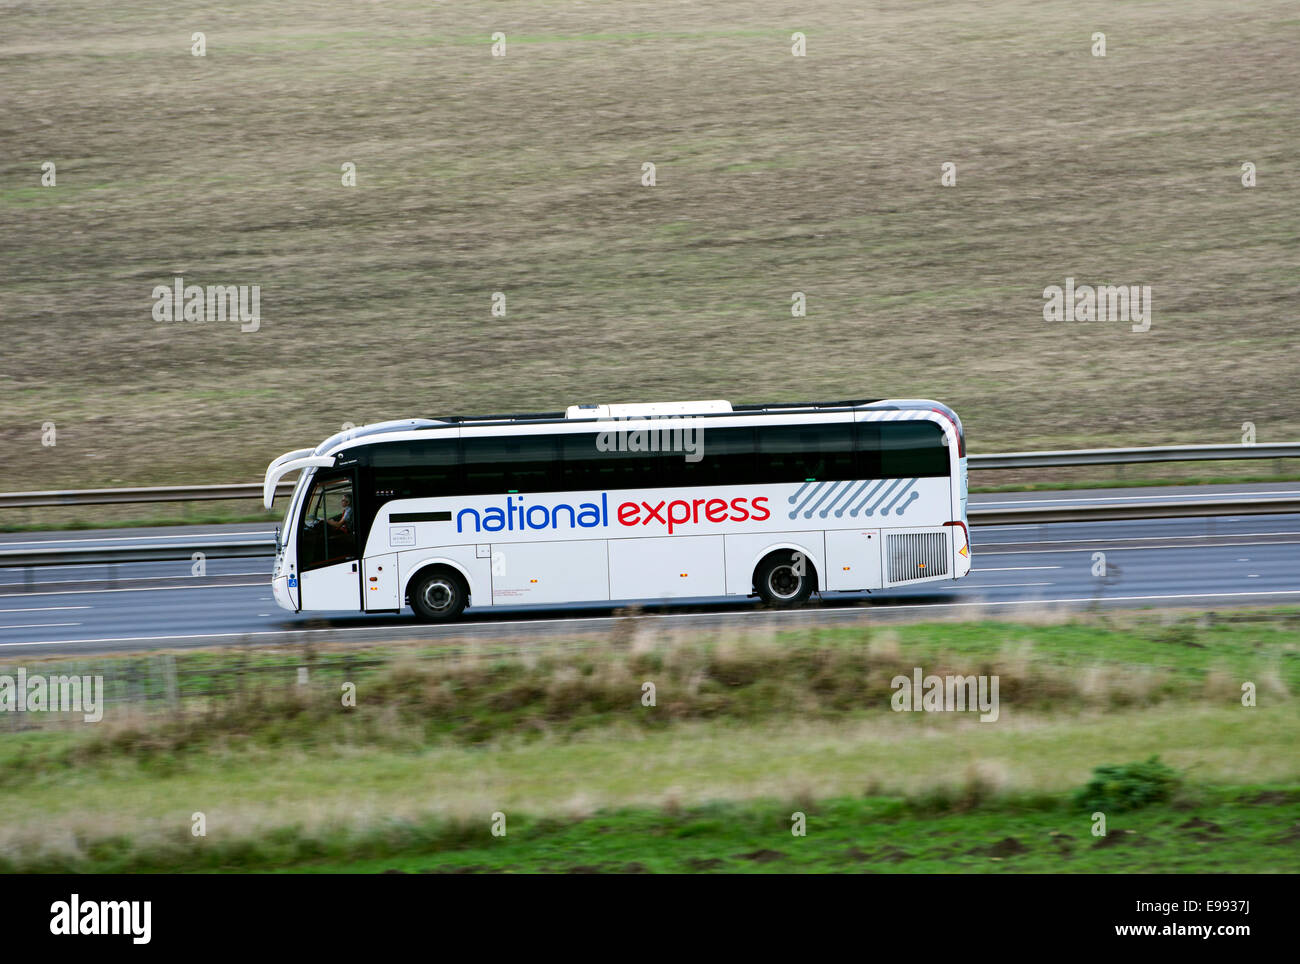 National Express coach on M40 motorway, Warwickshire, UK Stock Photo